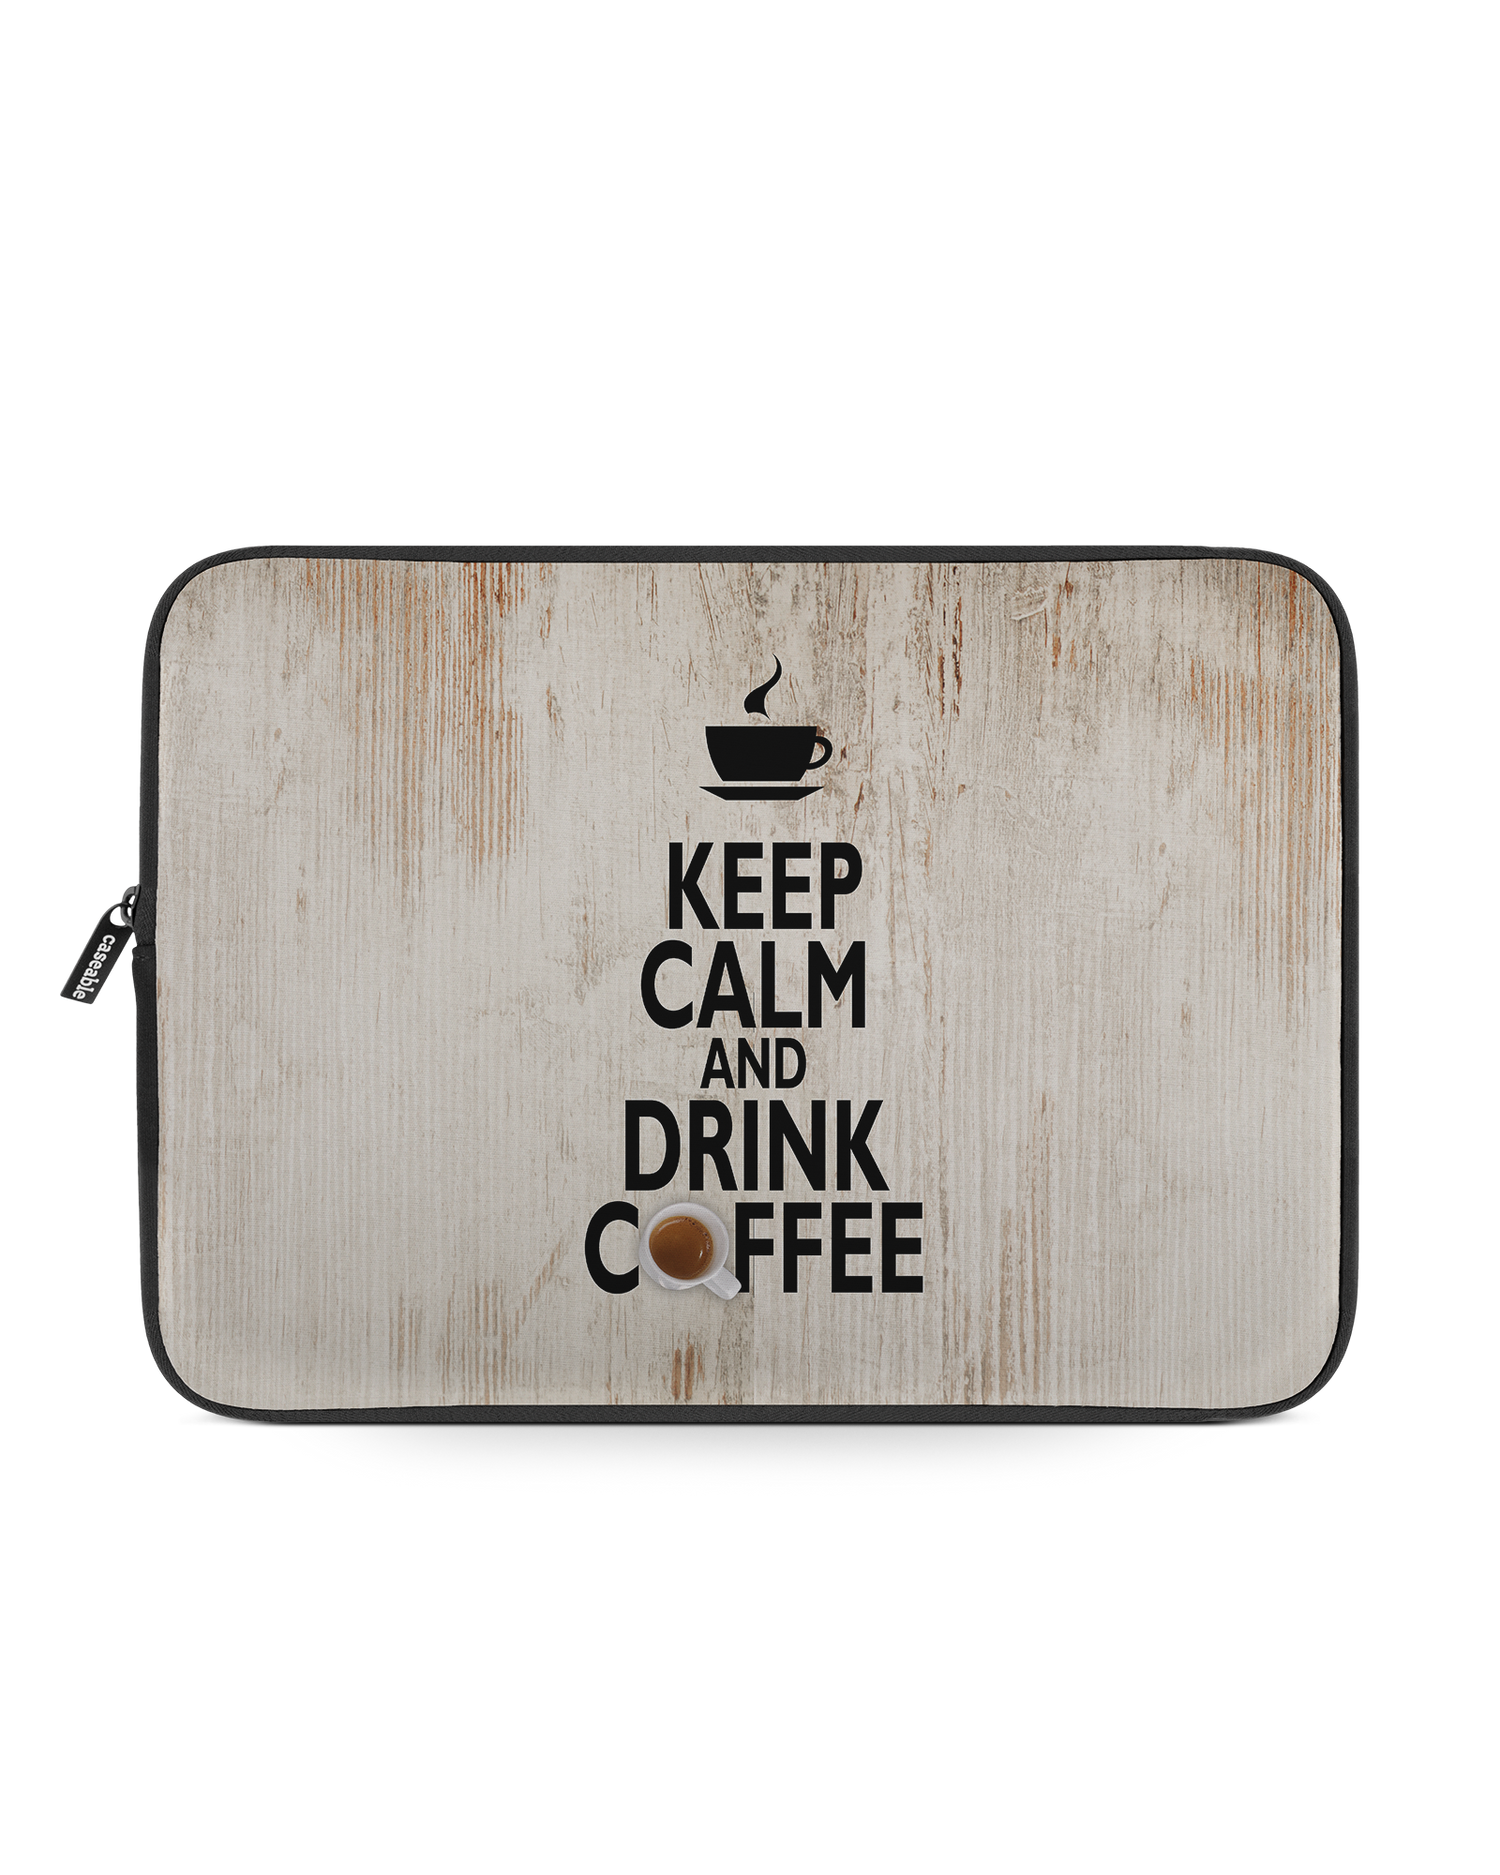 Drink Coffee Laptophülle 13-14 Zoll: Vorderansicht